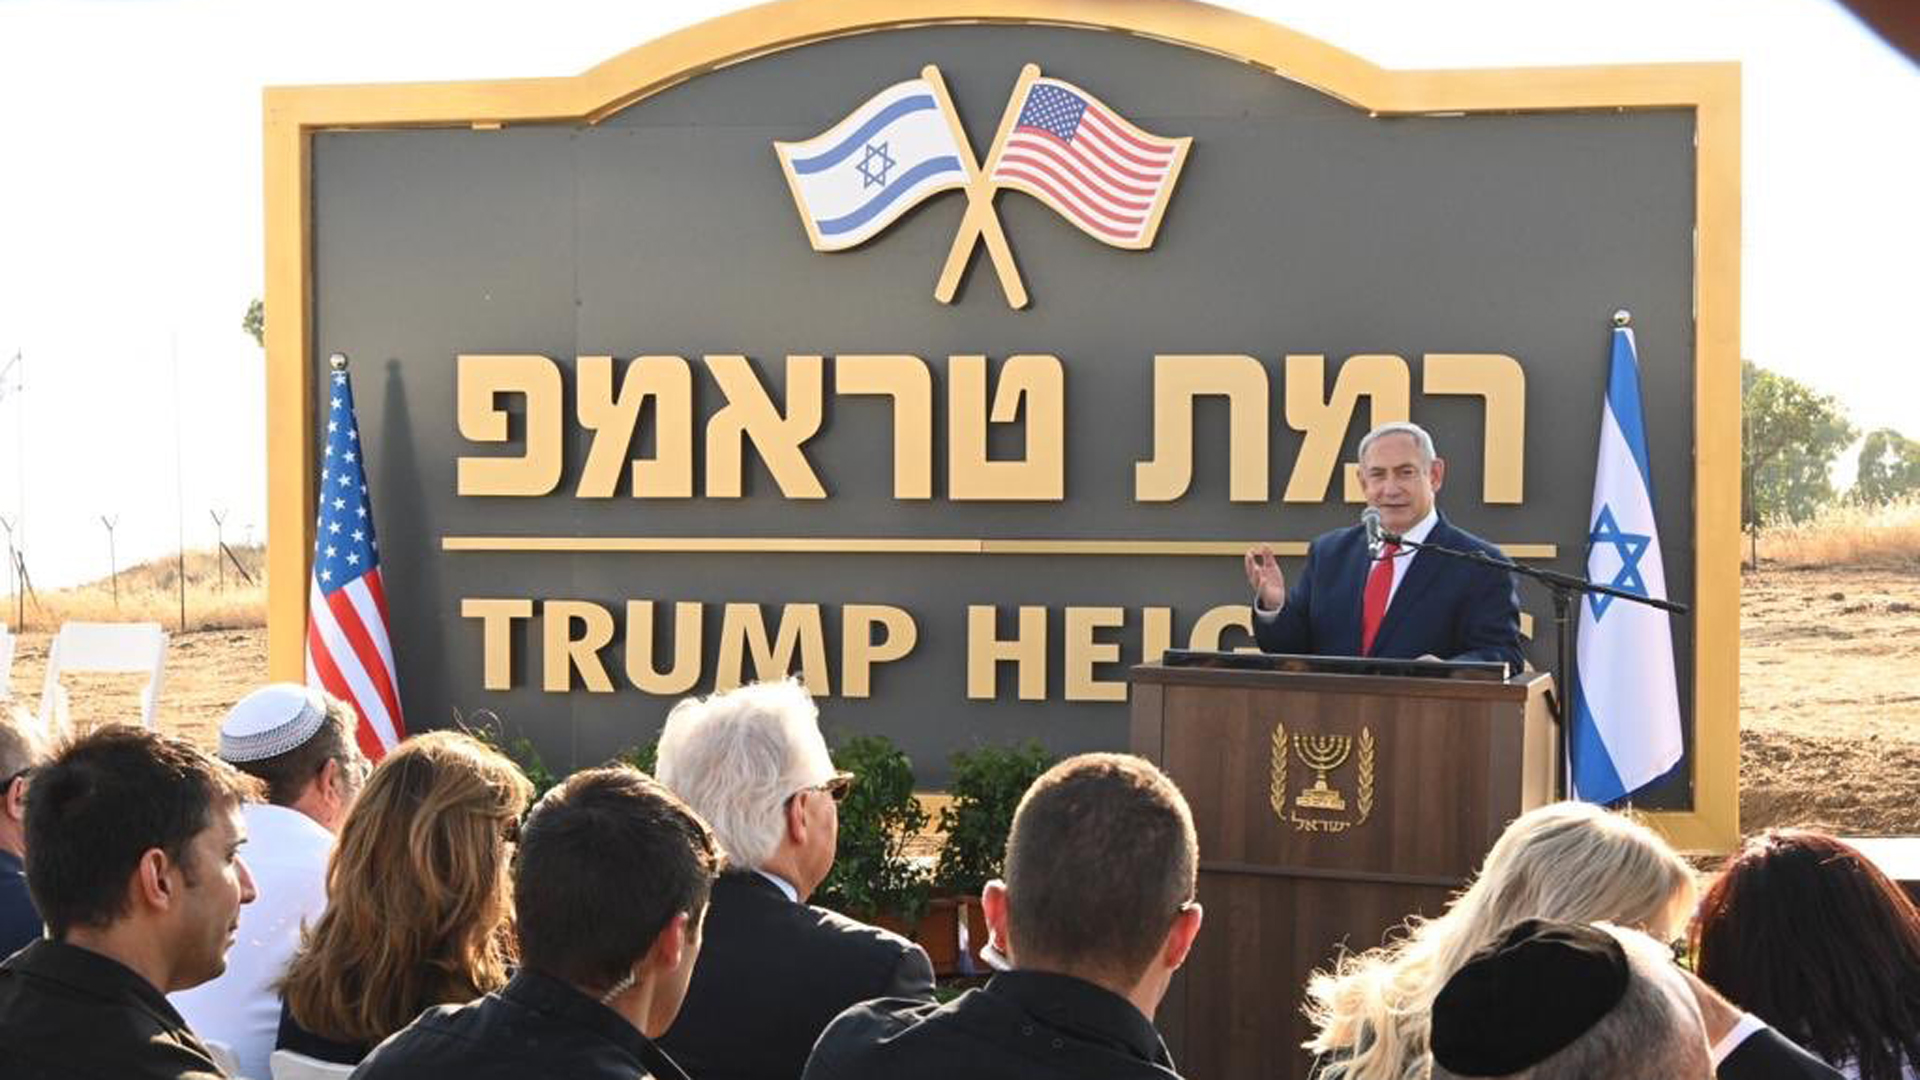 Anerkennung für die Anerkennung: Israel ehrte US-Präsident Trump mit einer nach ihm benannten Ortschaft in den Golanhöhen